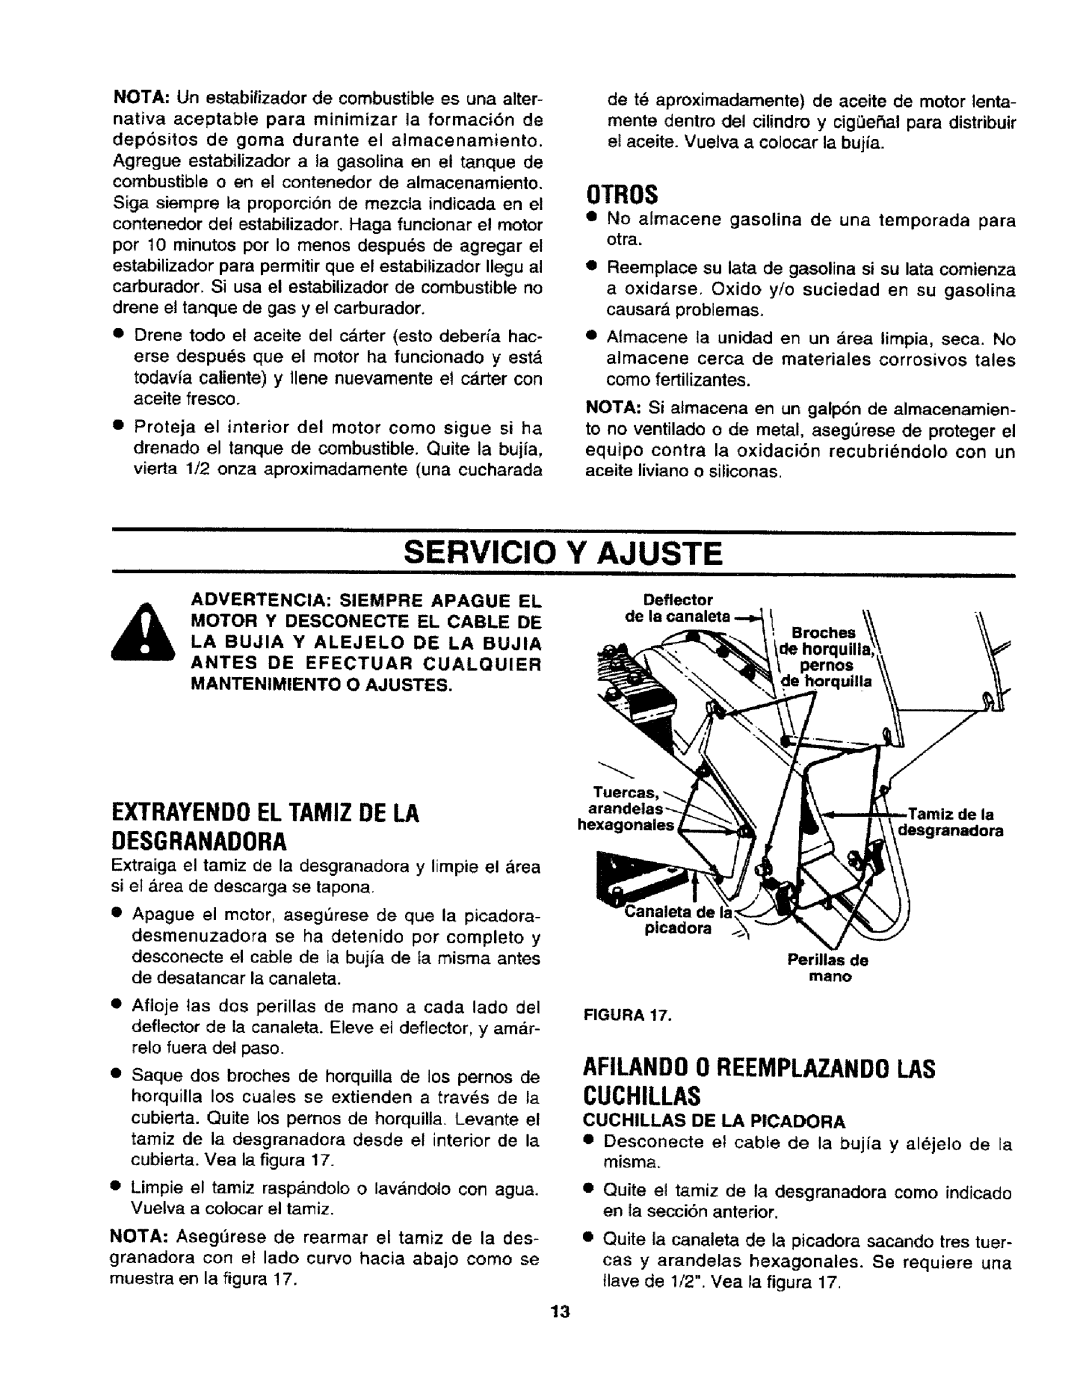 Craftsman 247.795940 manual Servicio, Y Ajuste, 0TROS, Extrayendoel Tamiz De La Desgranadora 